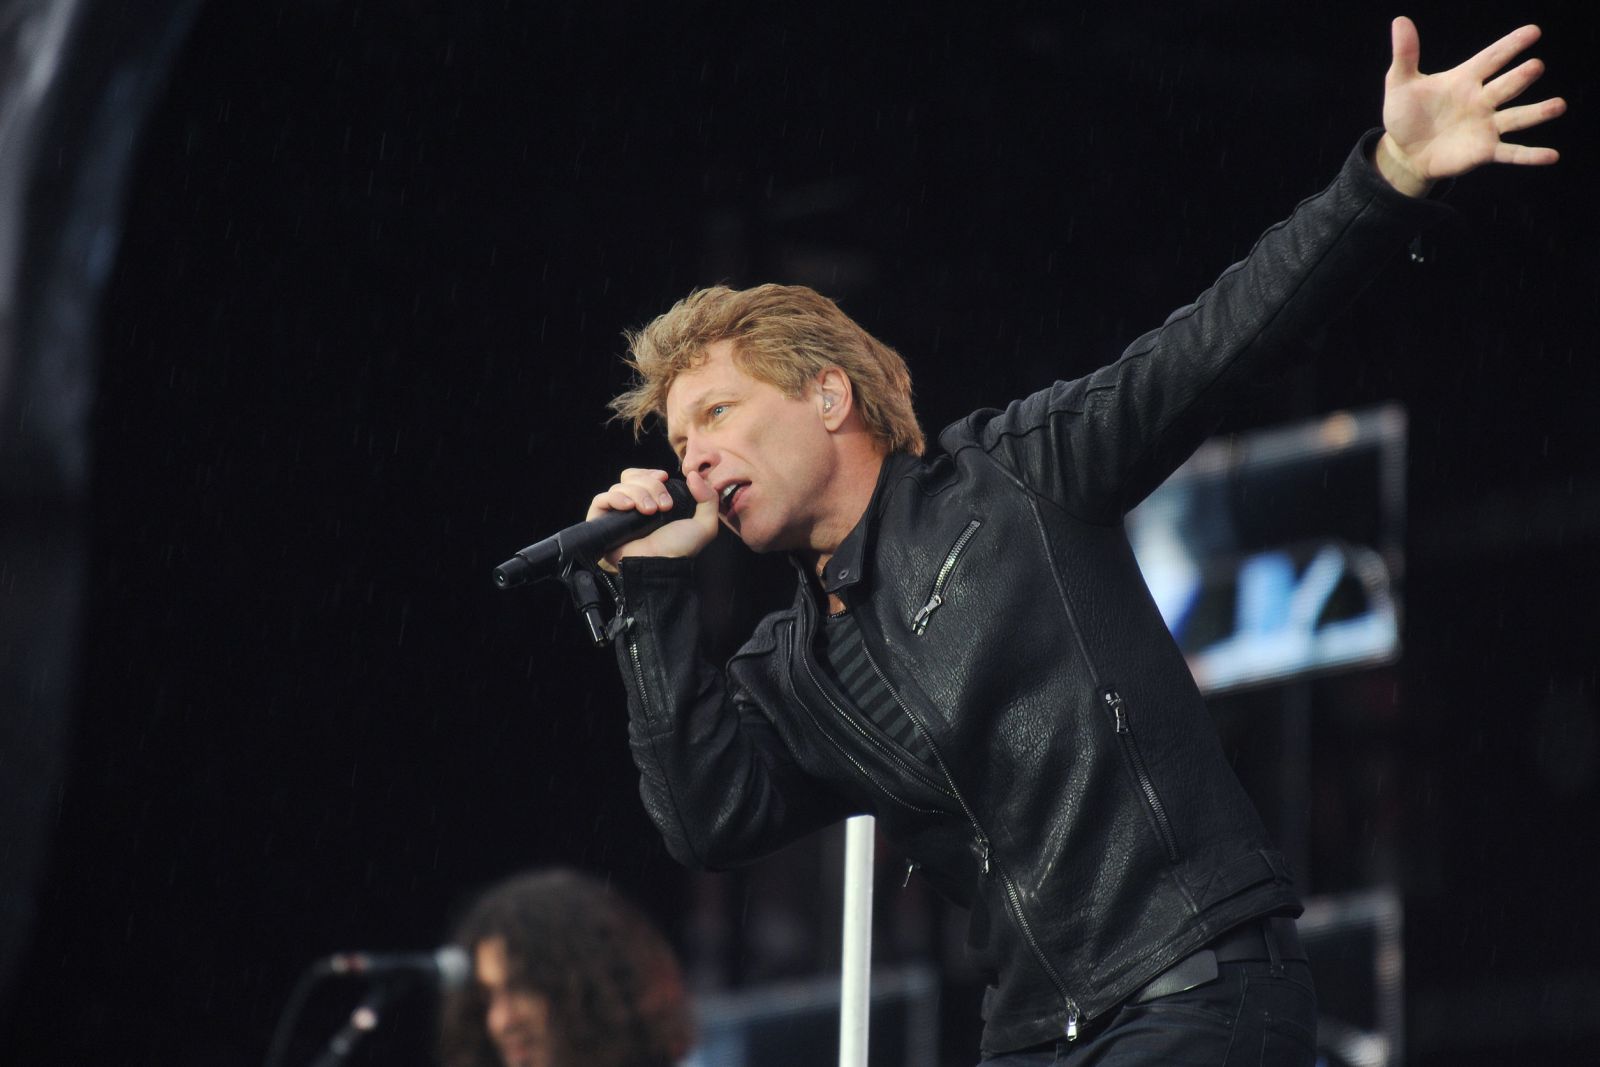 Jon Bon Jovi cantando no palco segurando microfone